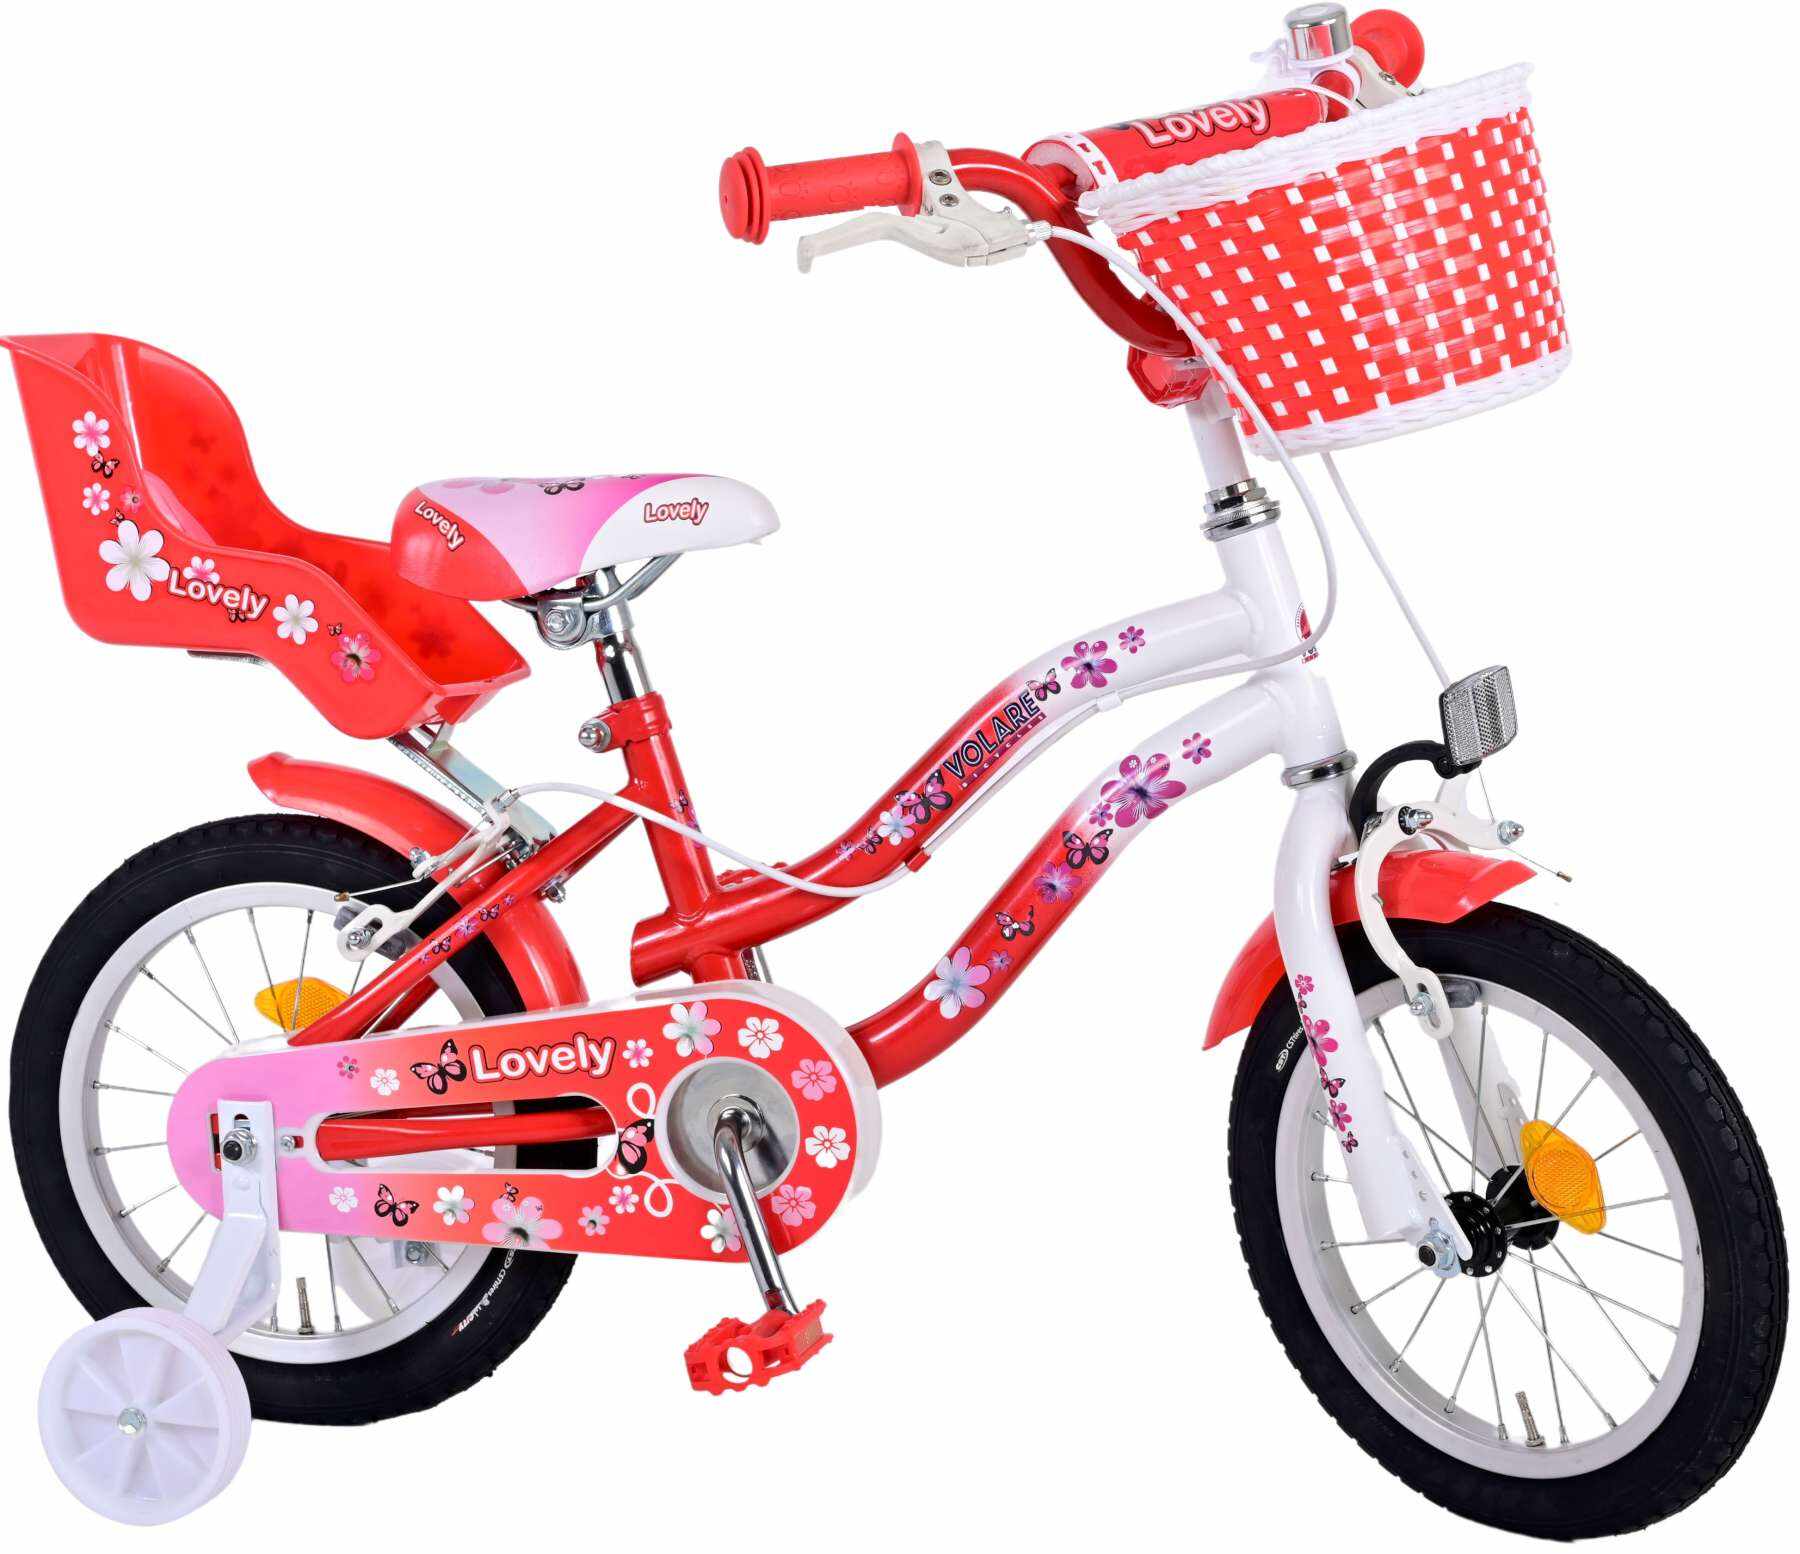 Bicicleta Volare Lovely pentru fete, culoare rosu/alb, 14 inch, frana de mana fata si spate